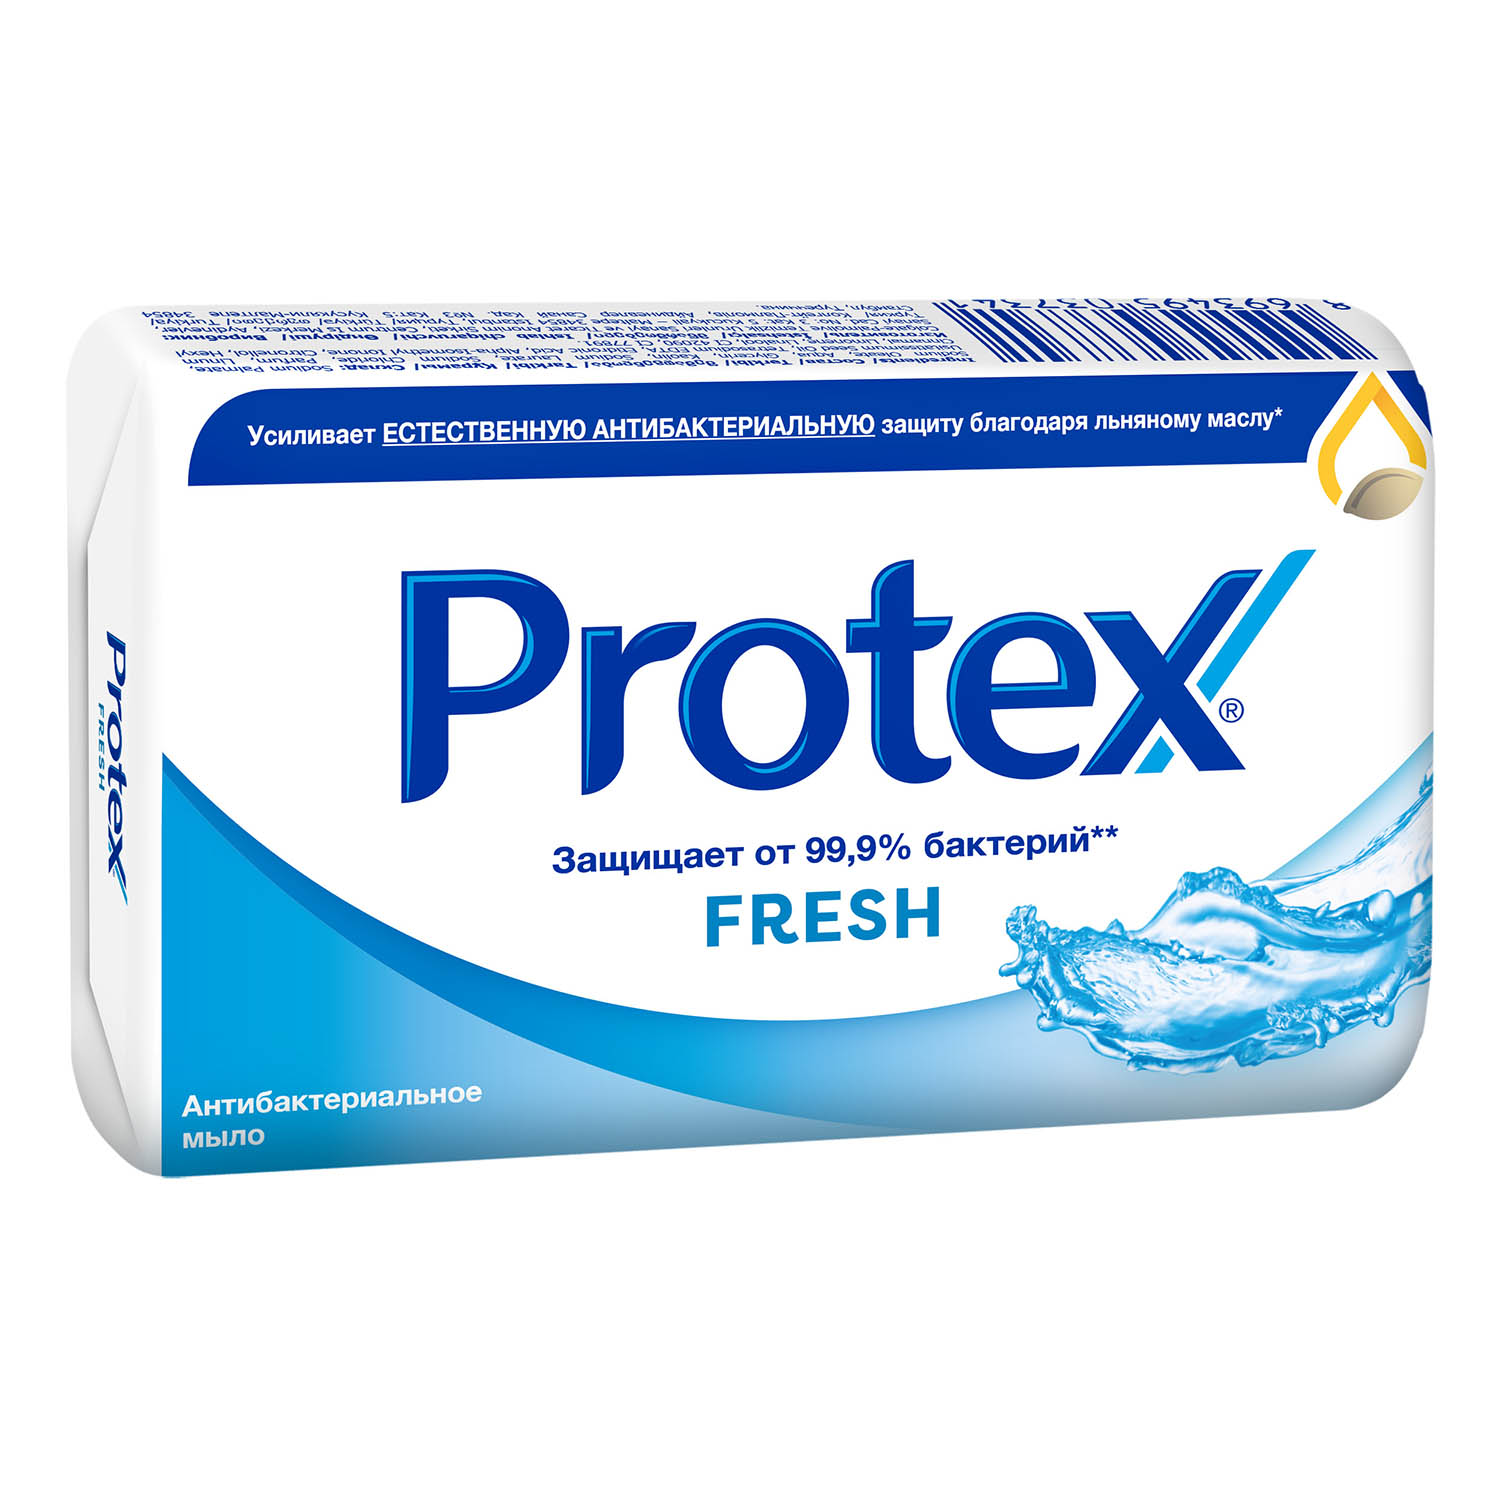 Мыло туалетное Protex Fresh антибактериальное, 90 г антибактериальное туалетное мыло меридиан